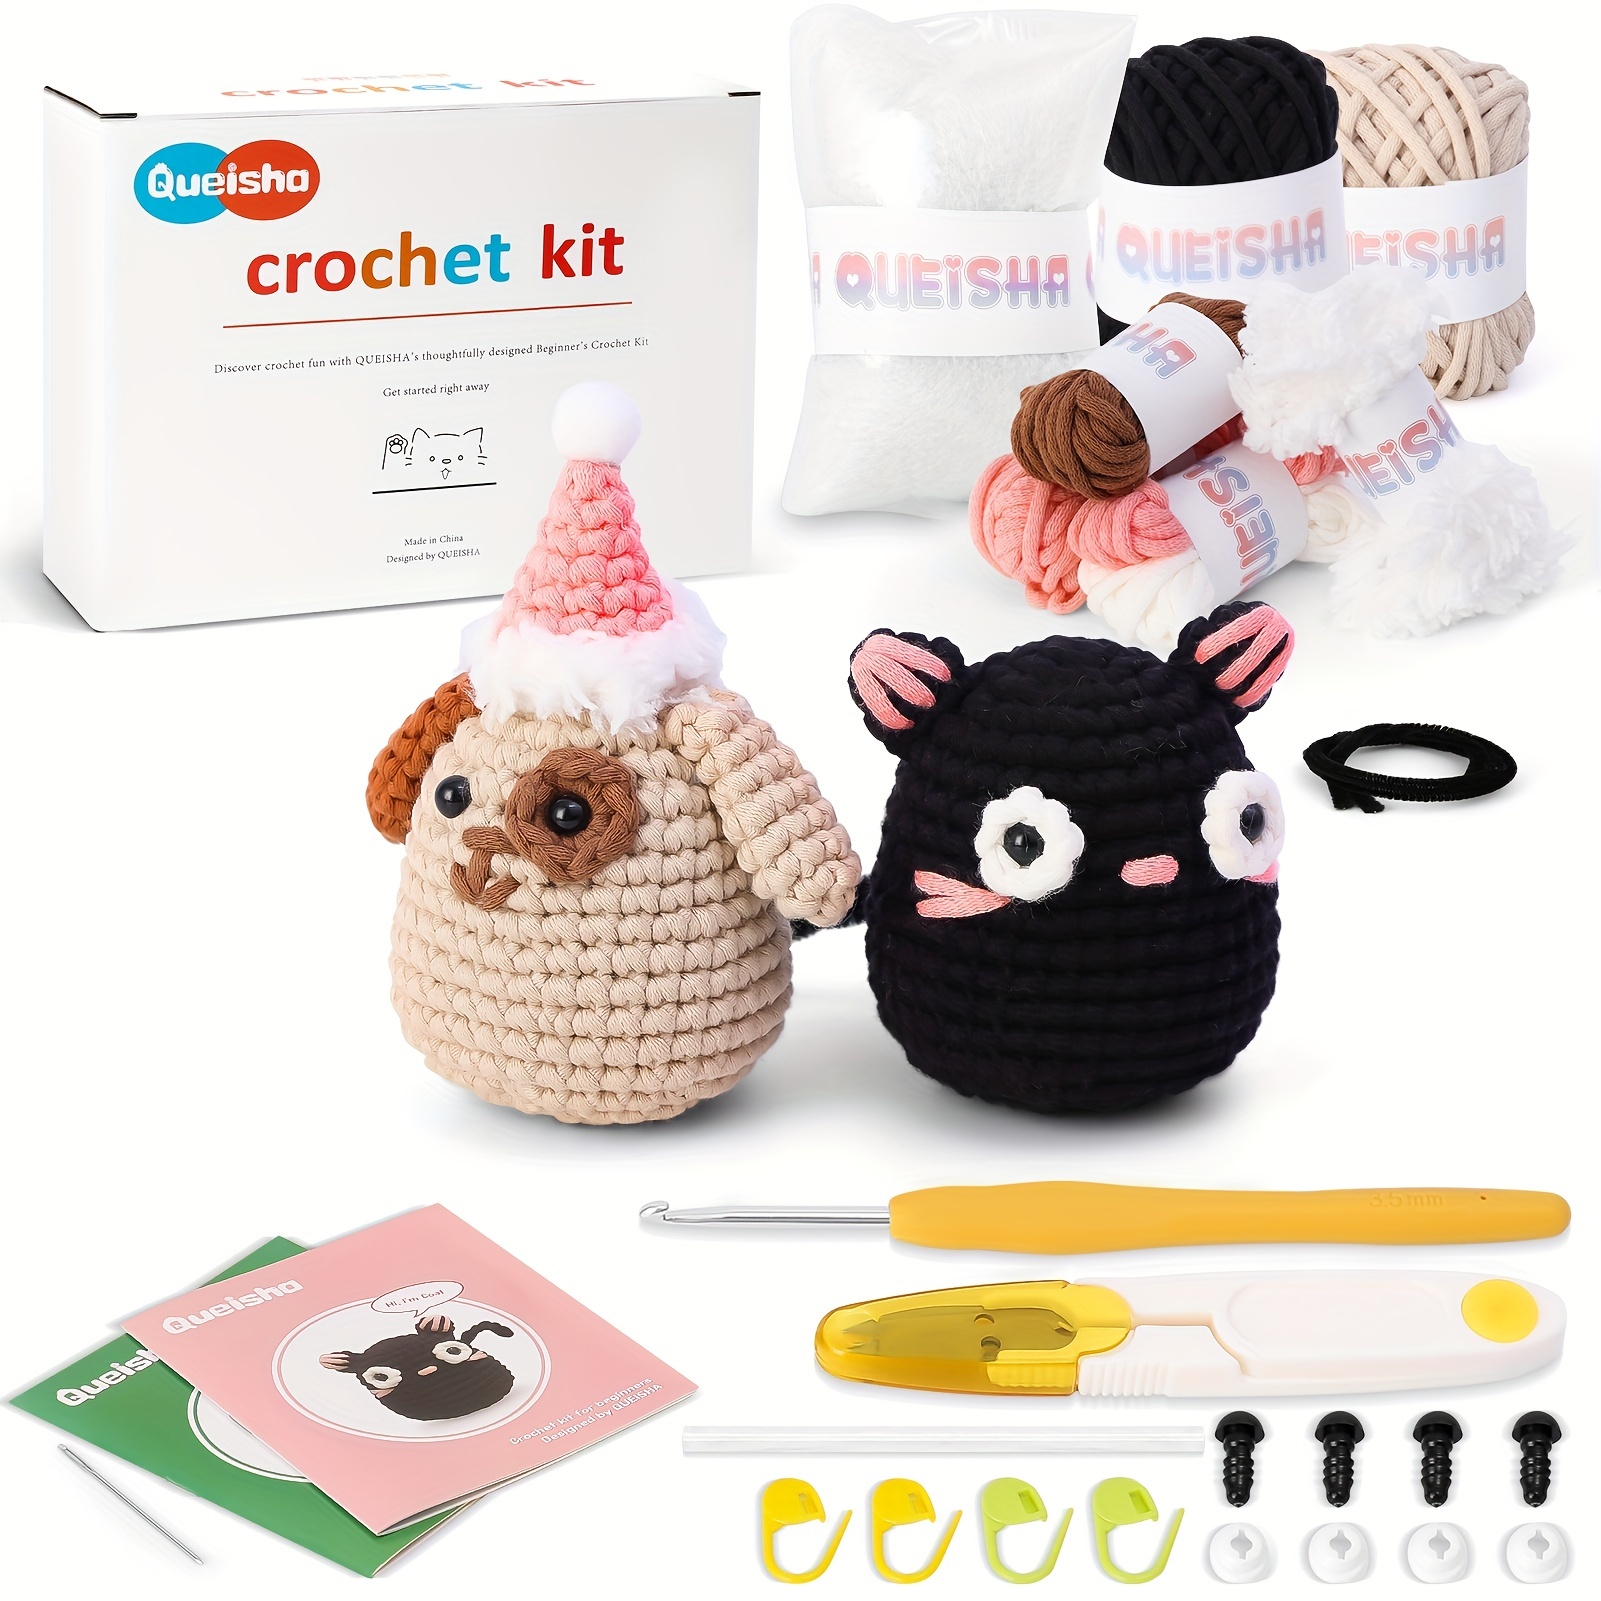  Tuyusa Crochet Kit for Beginners, Beginners Crochet